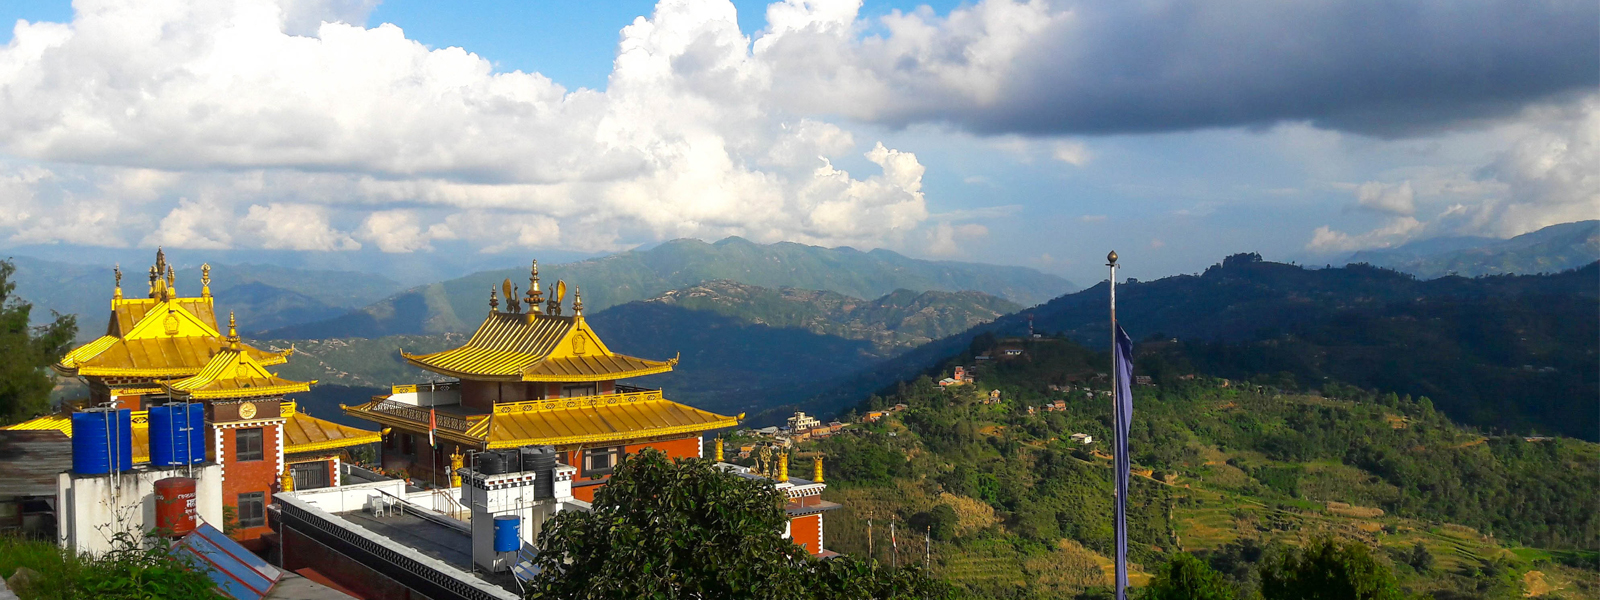 Thrangu Tashi Yangtse Monastery Namo Buddha-Day Tour